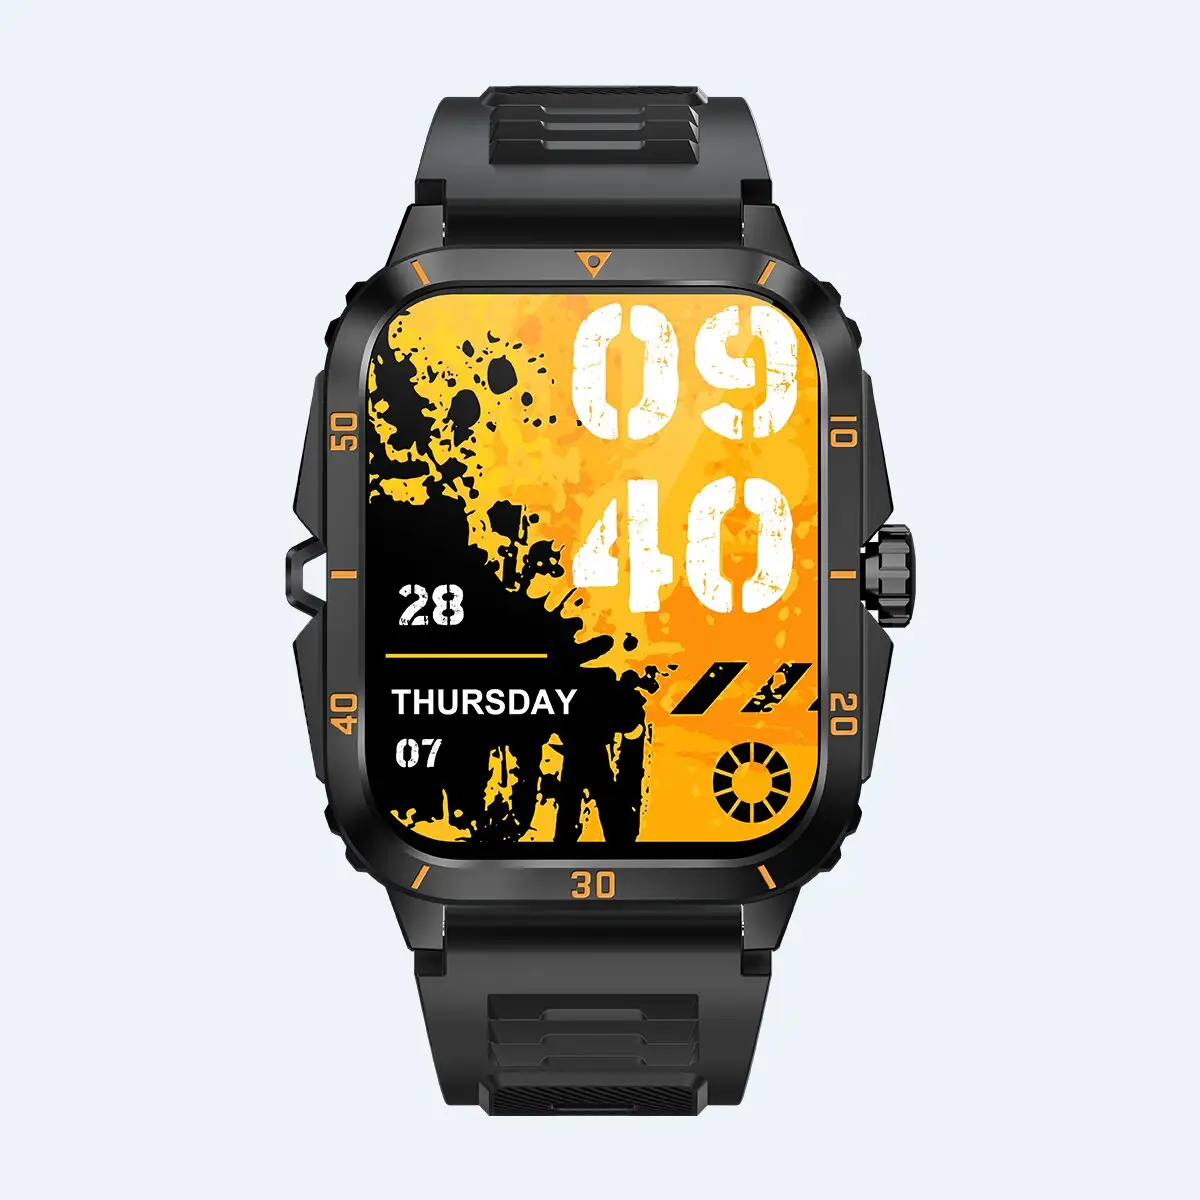 Relógio inteligente digital para homens, com marca própria, logotipo, fitness, esportes ao ar livre, câmera de chamada direta da fábrica, relógio de saúde e vídeo